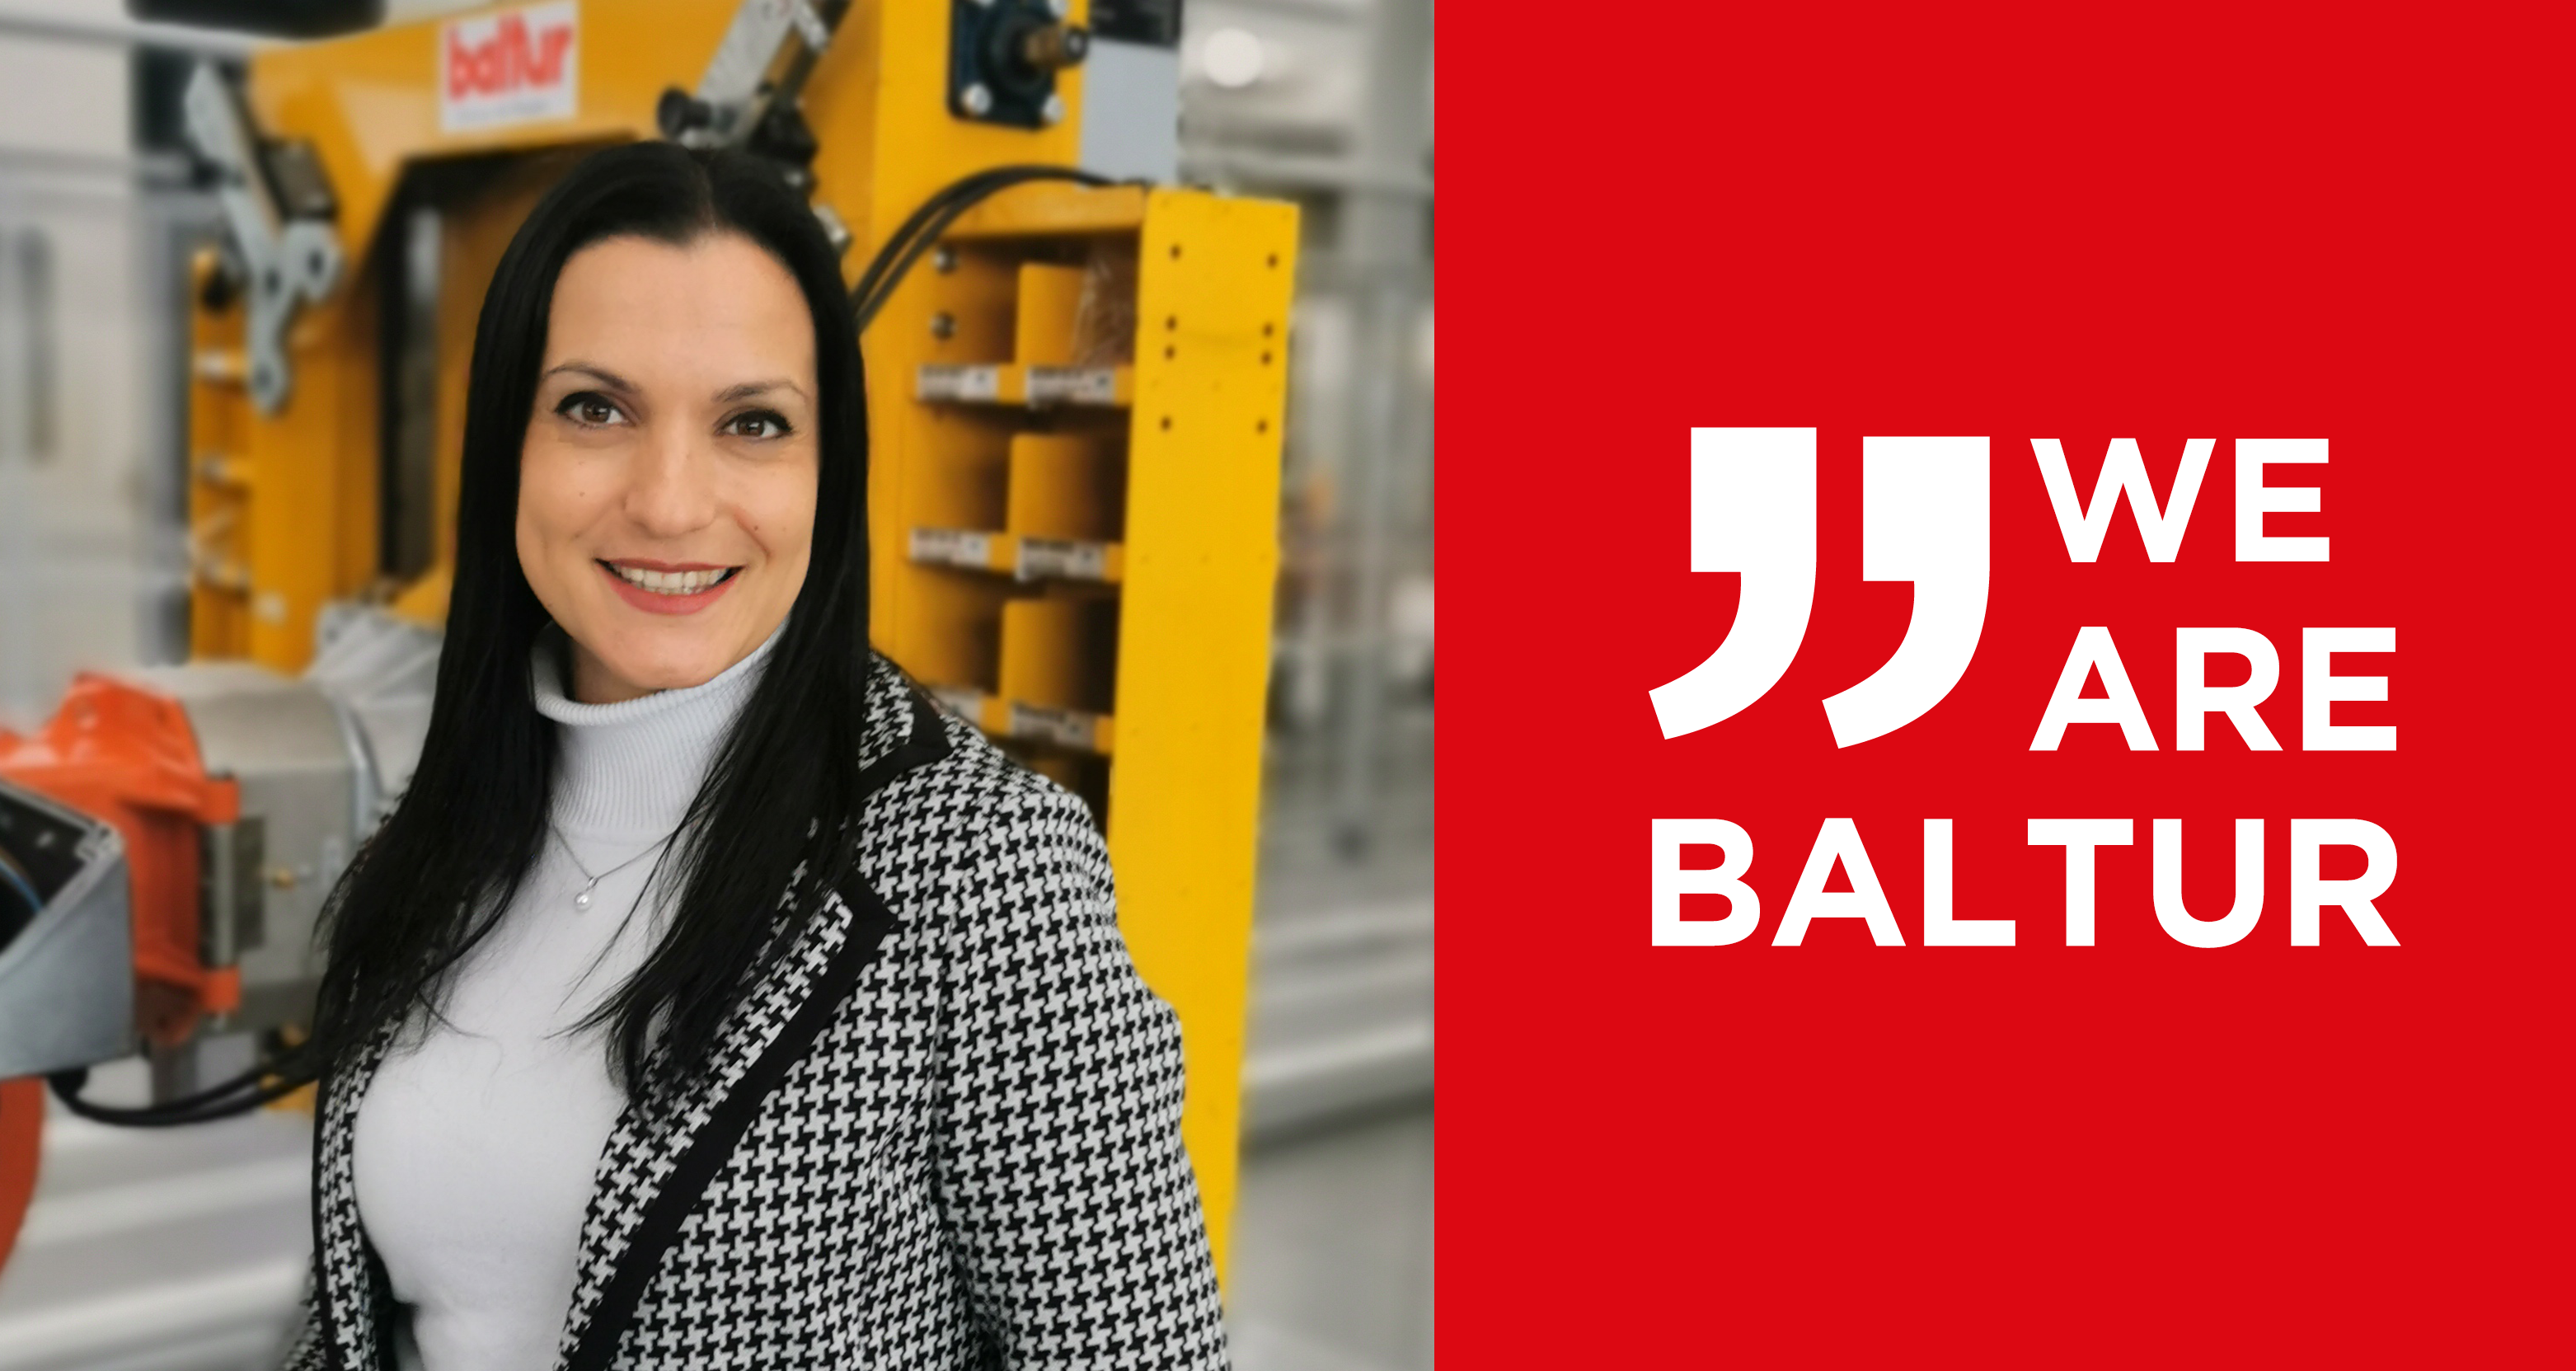 Crecimiento y oportunidades profesionales en Baltur: entrevista a Margherita Zaverio, directora de RR. HH. 1